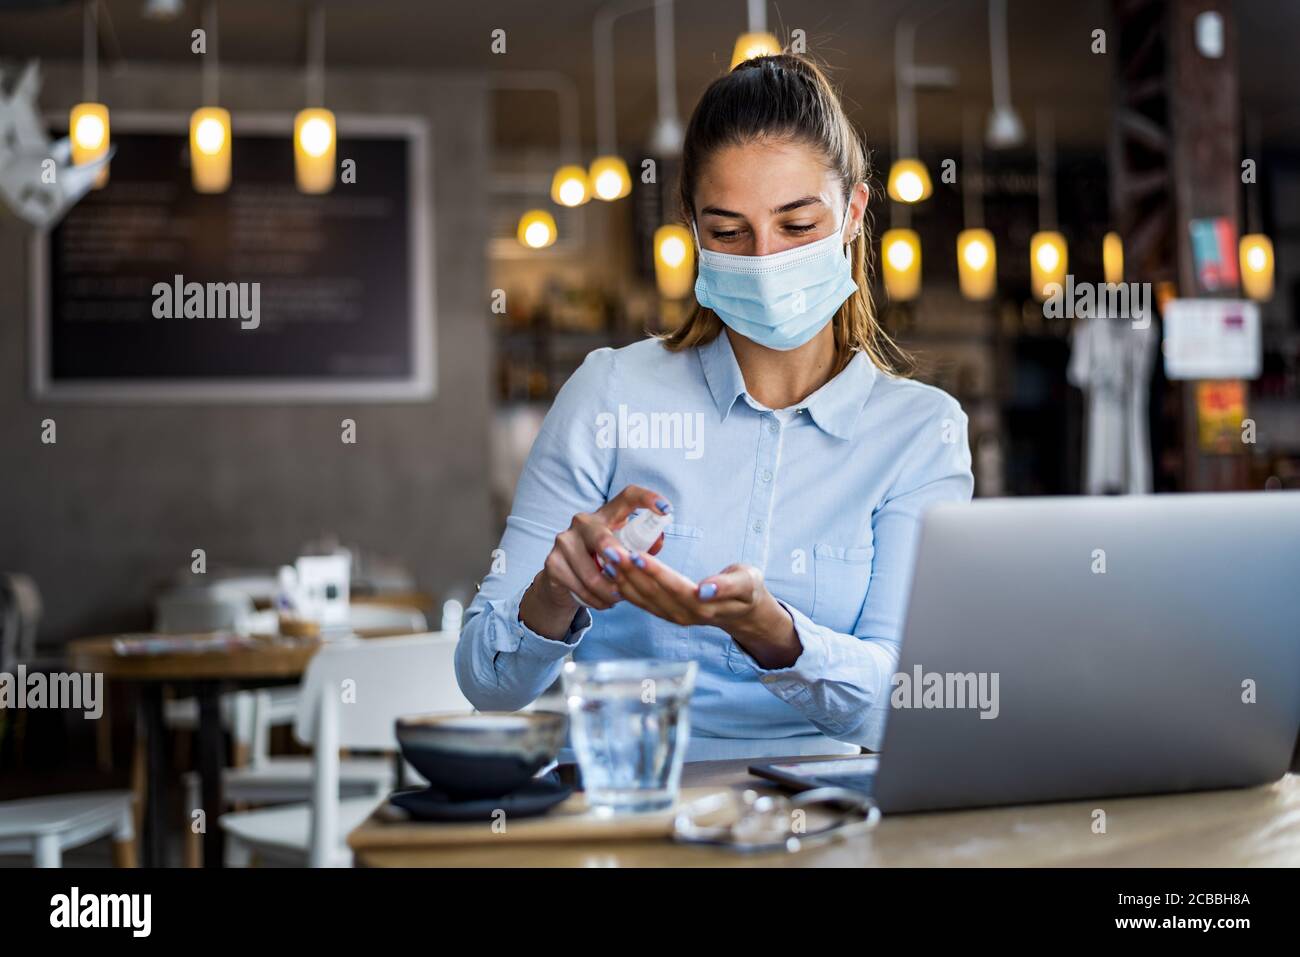 Portrait d'une jeune femme avec masque chirurgical en utilisant du gel désinfectant pour les mains au restaurant. Antiseptique, virus pandémique Corona, concept d'hygiène et de soins de santé. Banque D'Images